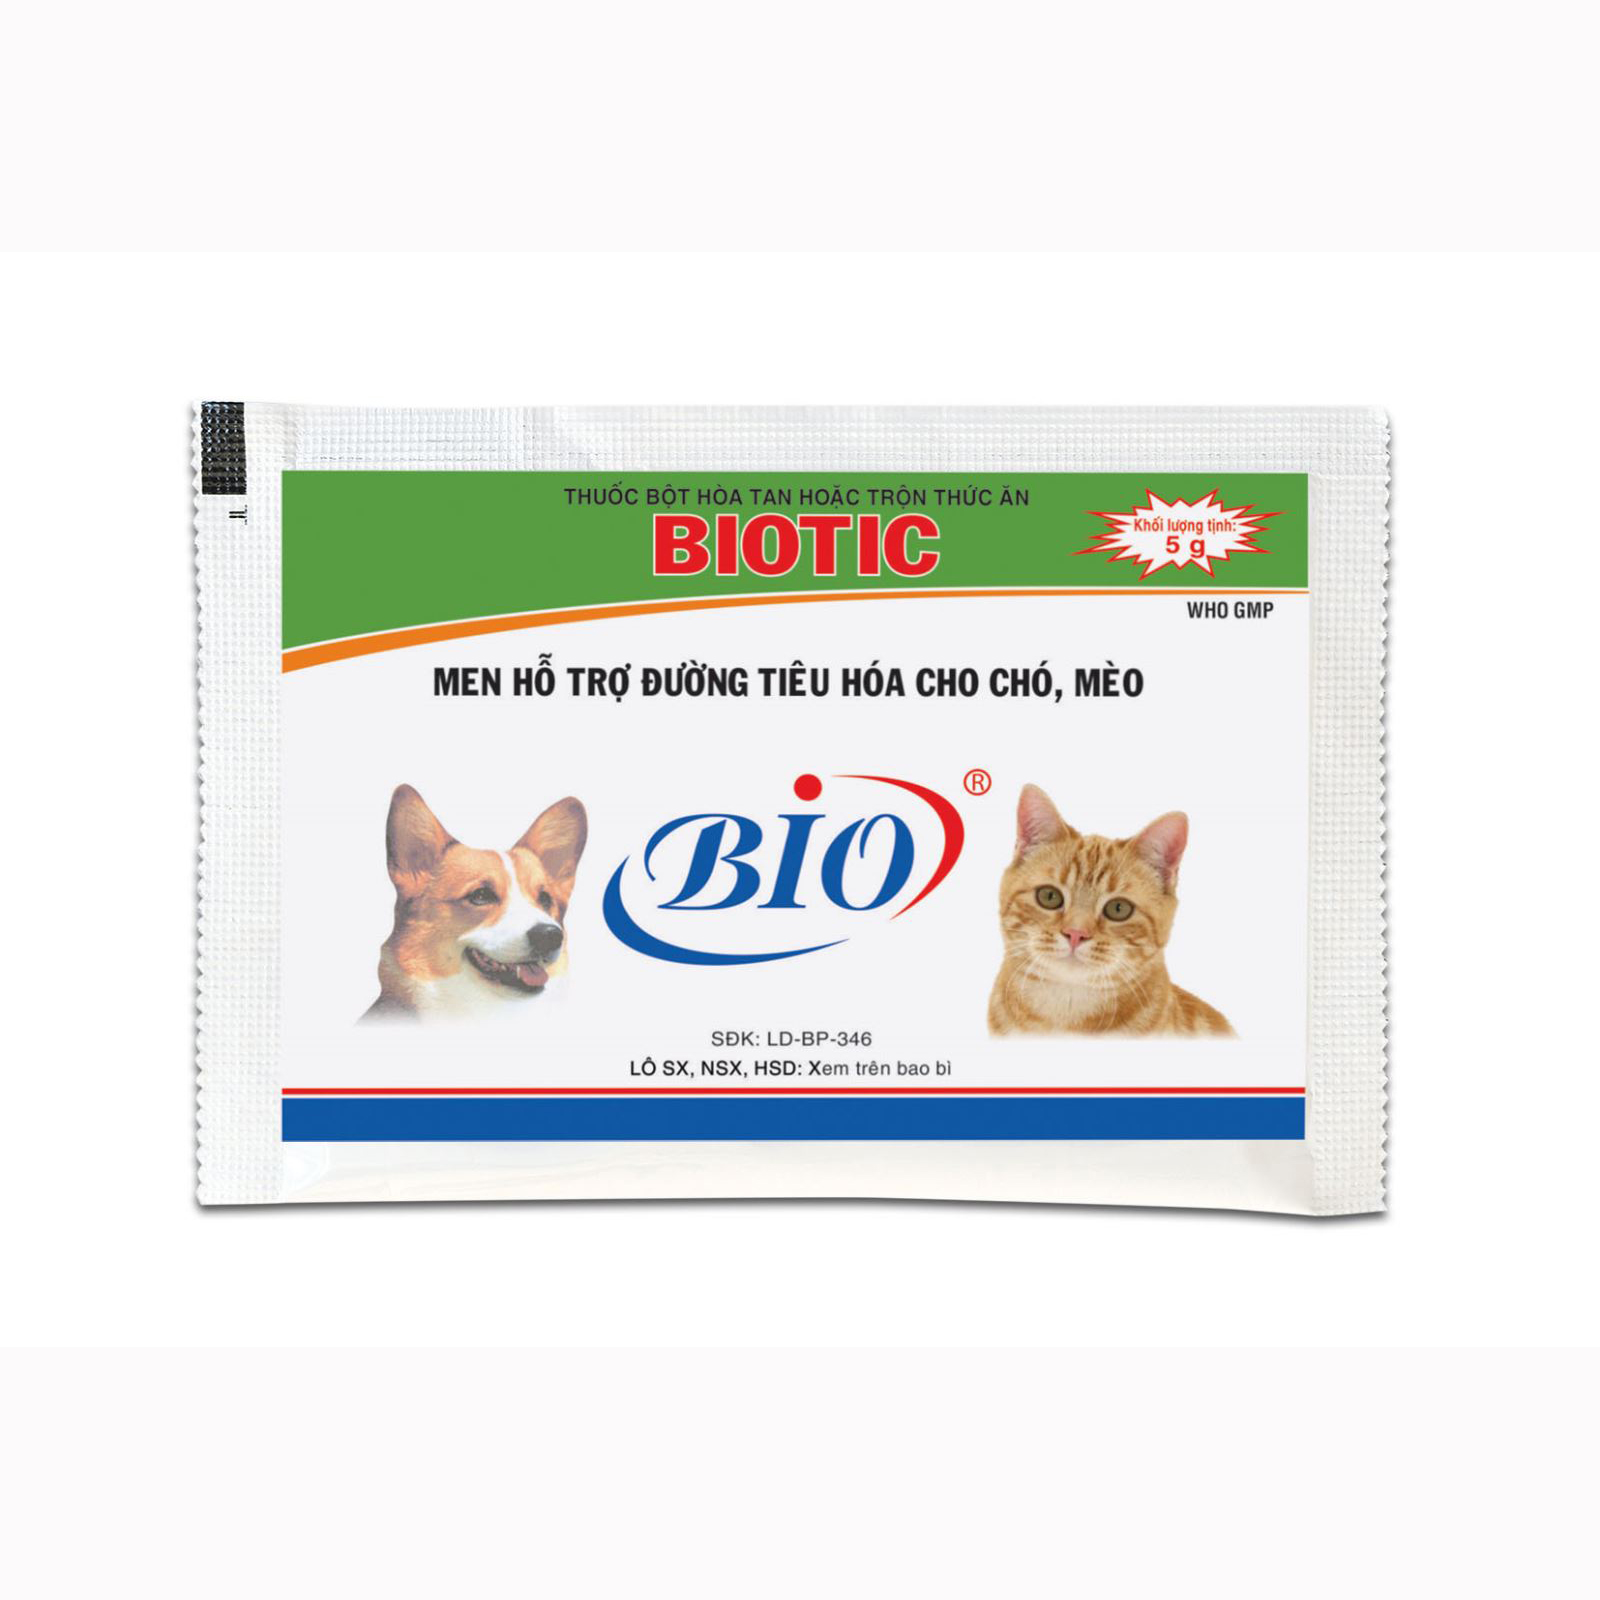 Men tiêu hóa Biotic, hỗ trợ đường tiêu hóa cho chó mèo 5g